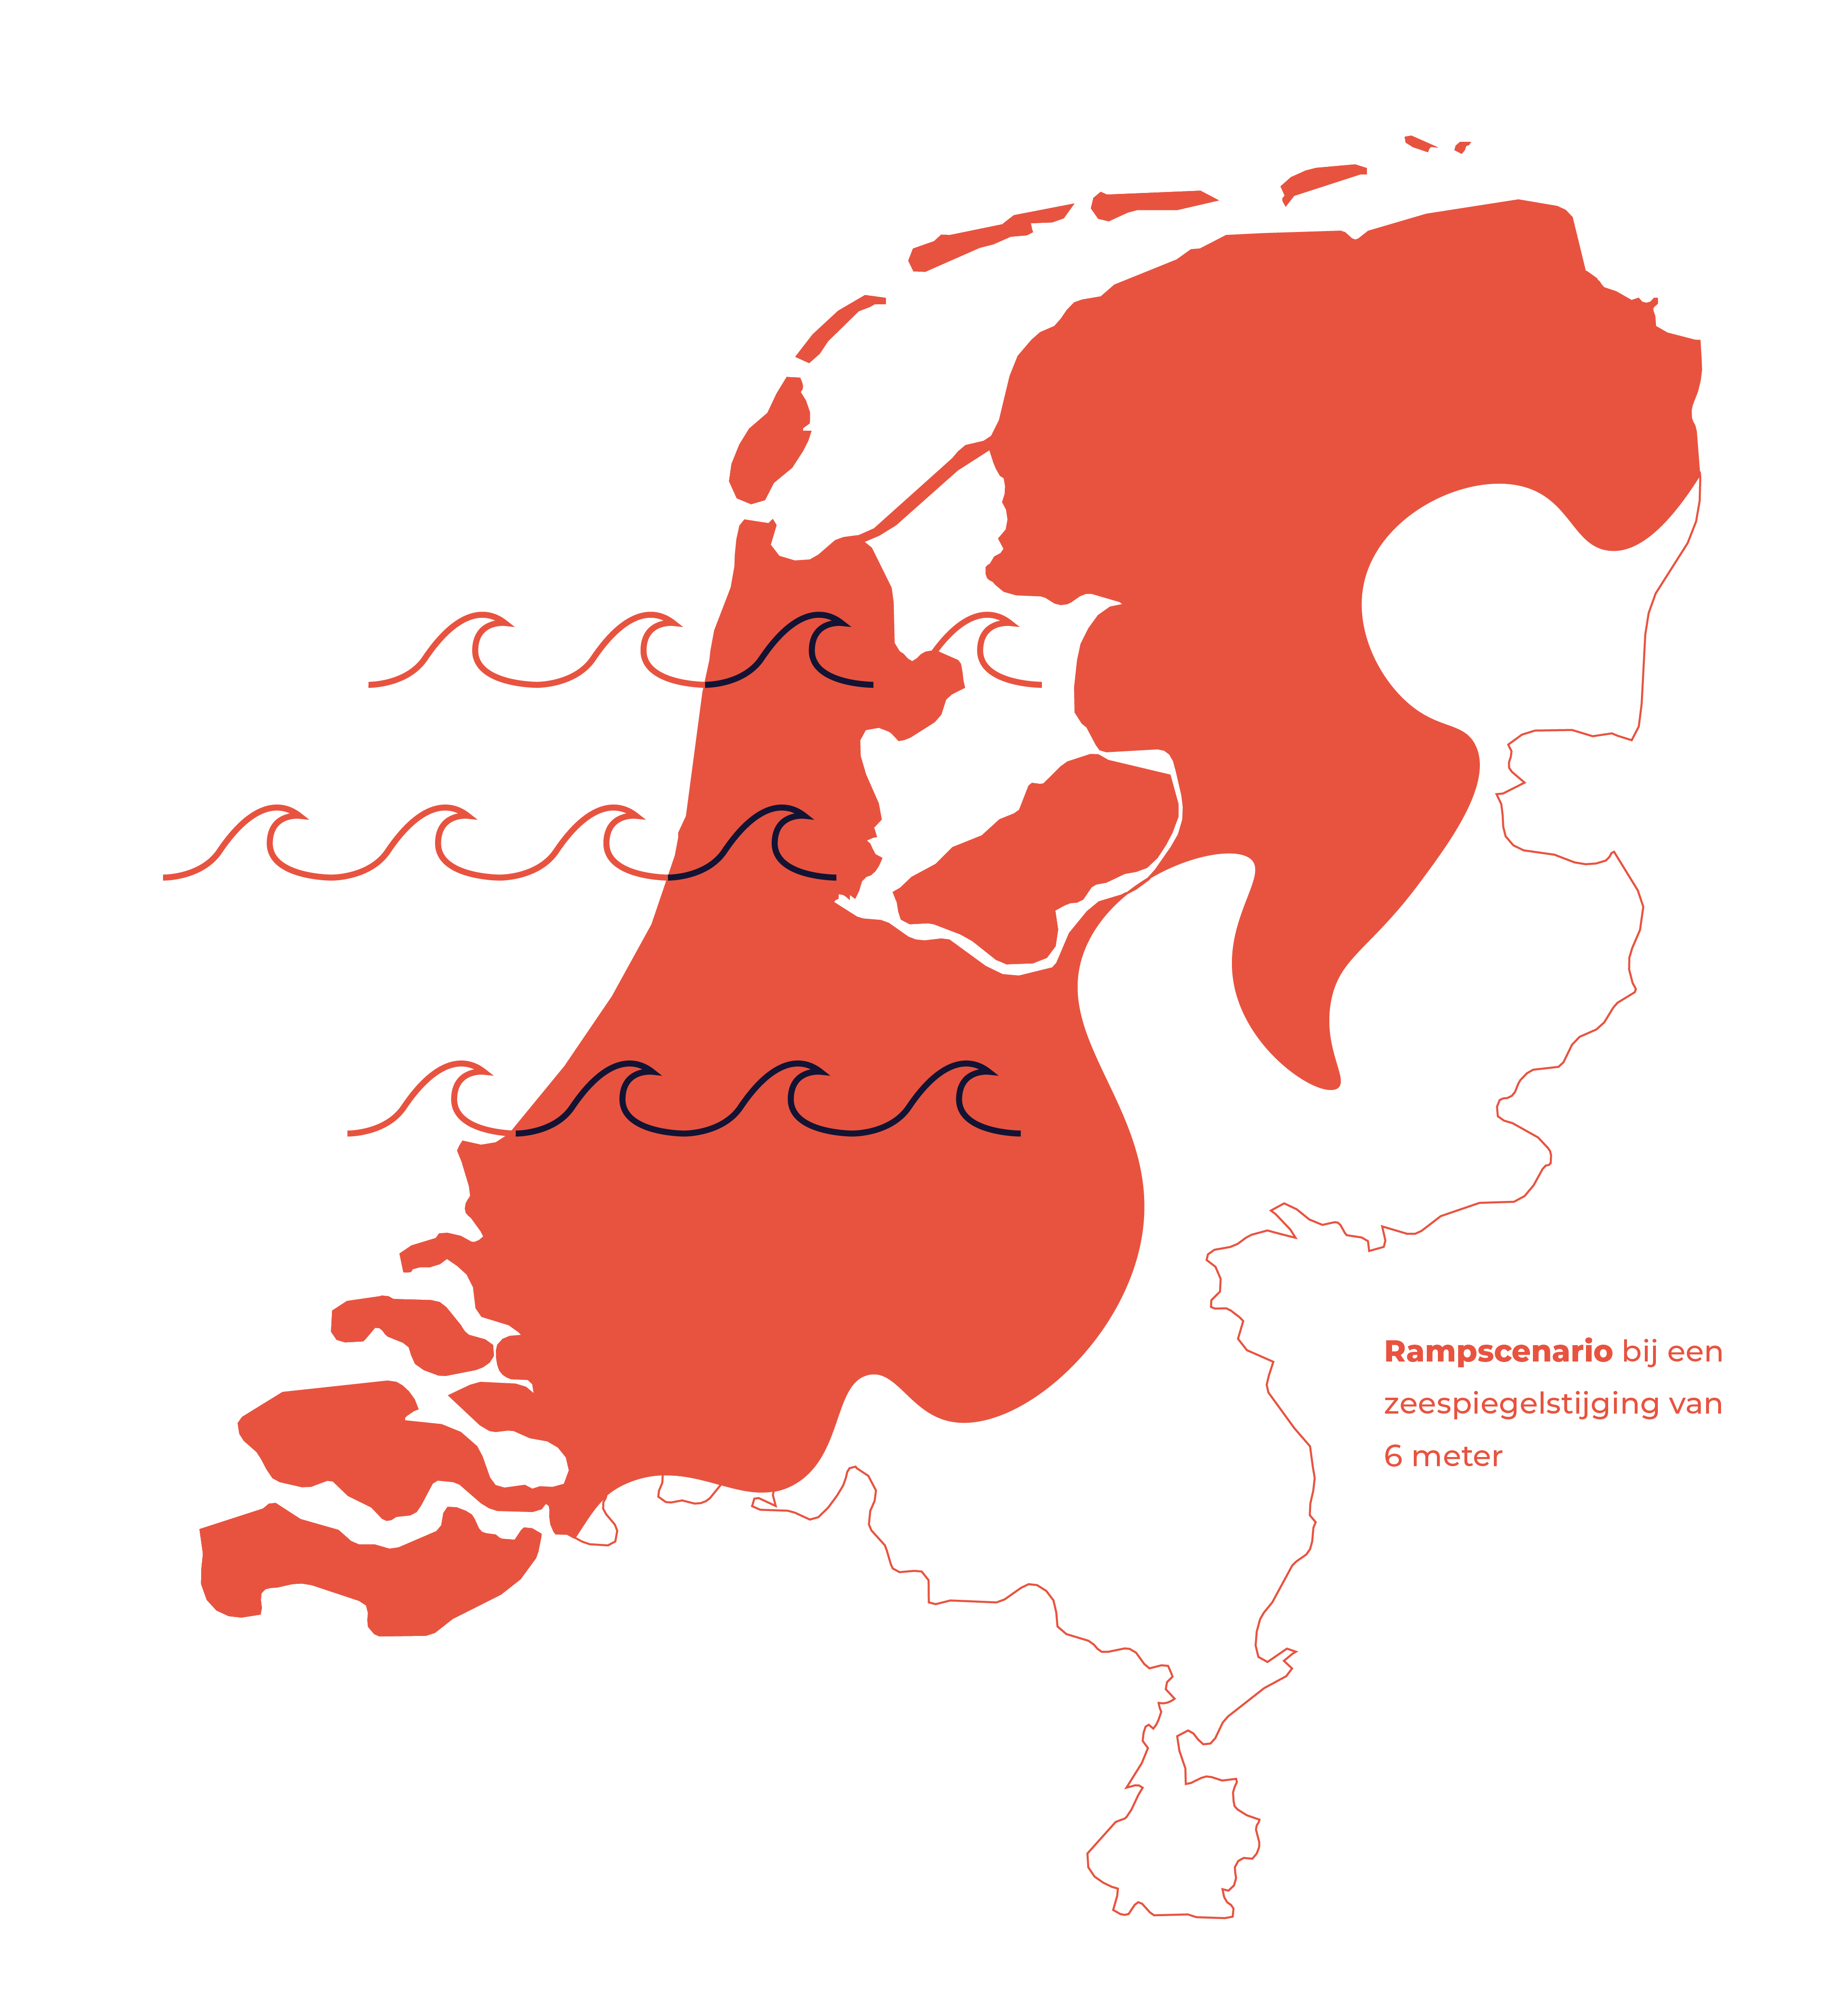 Nederland overspoeld